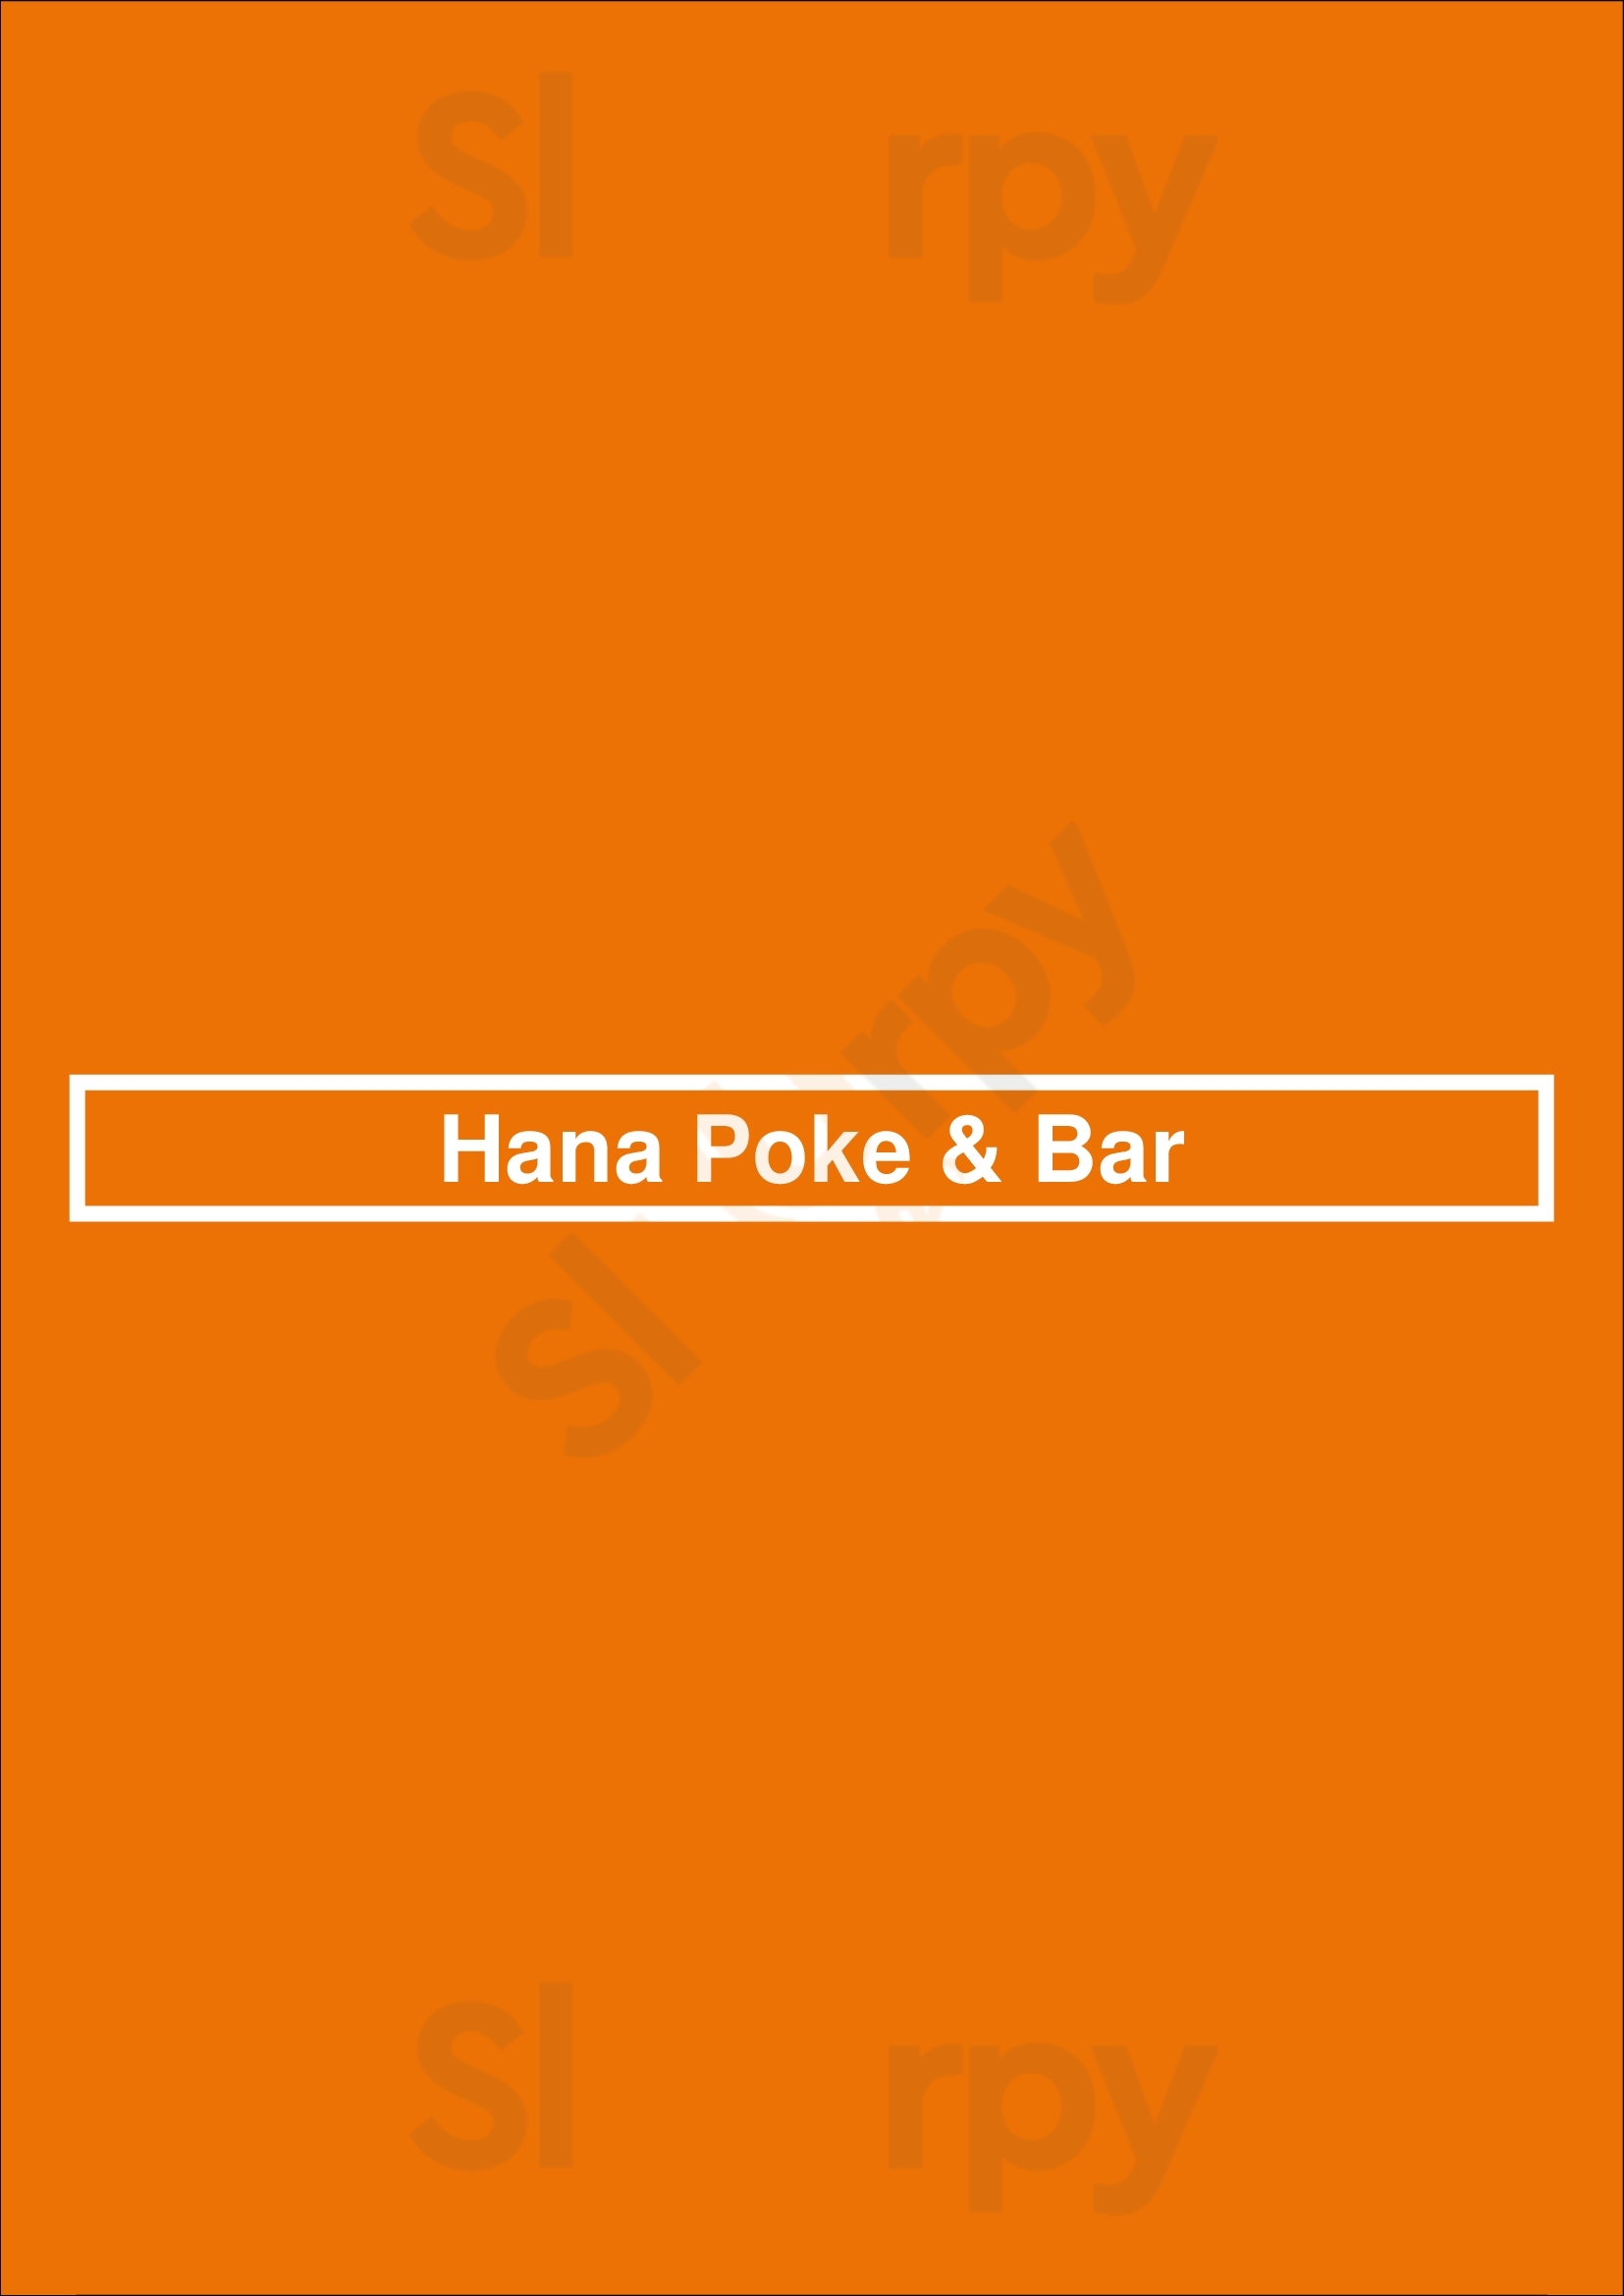 Hana Poke & Bar Buenos Aires Menu - 1